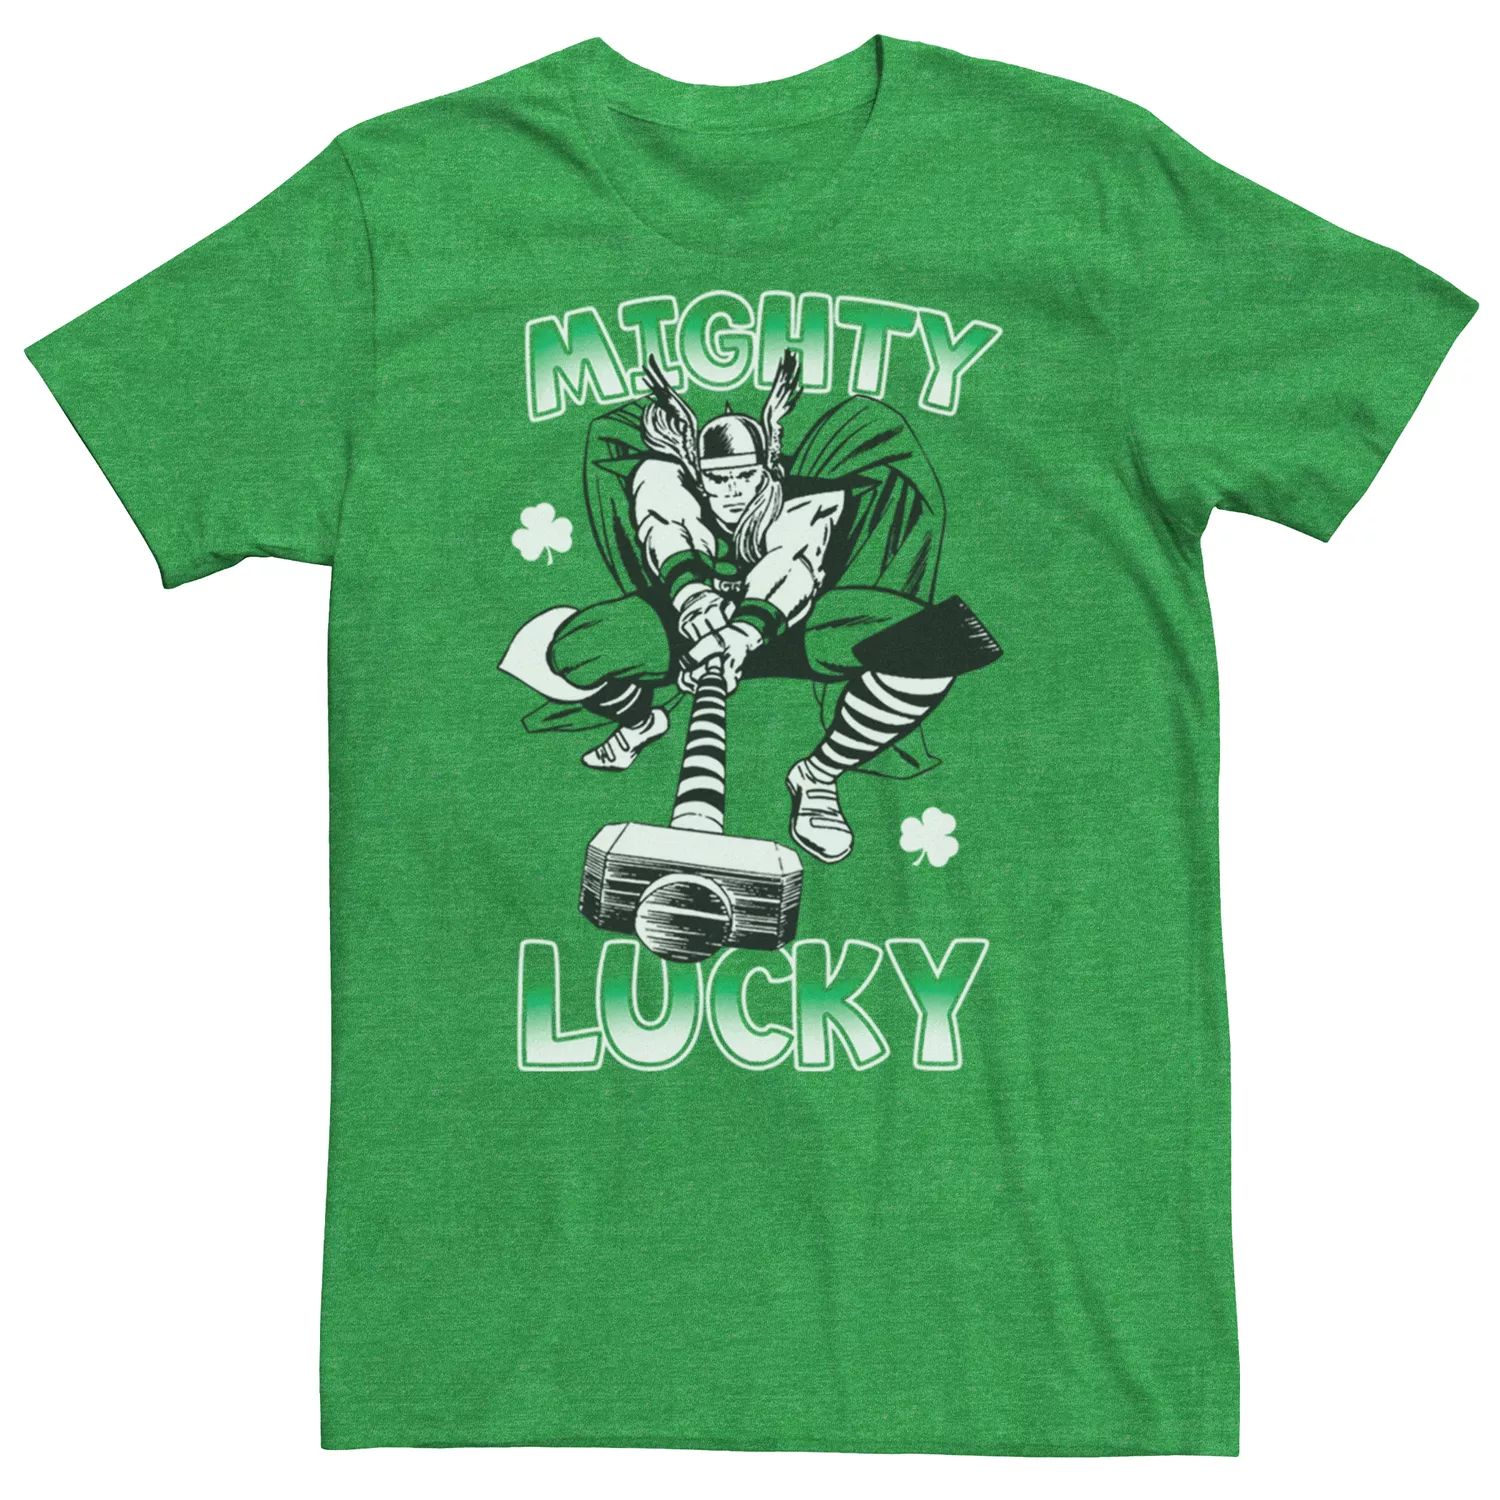 Мужская футболка Marvel Mighty Lucky ко Дню Святого Патрика Licensed Character мужская футболка с надписью hulk lucky ко дню святого патрика marvel